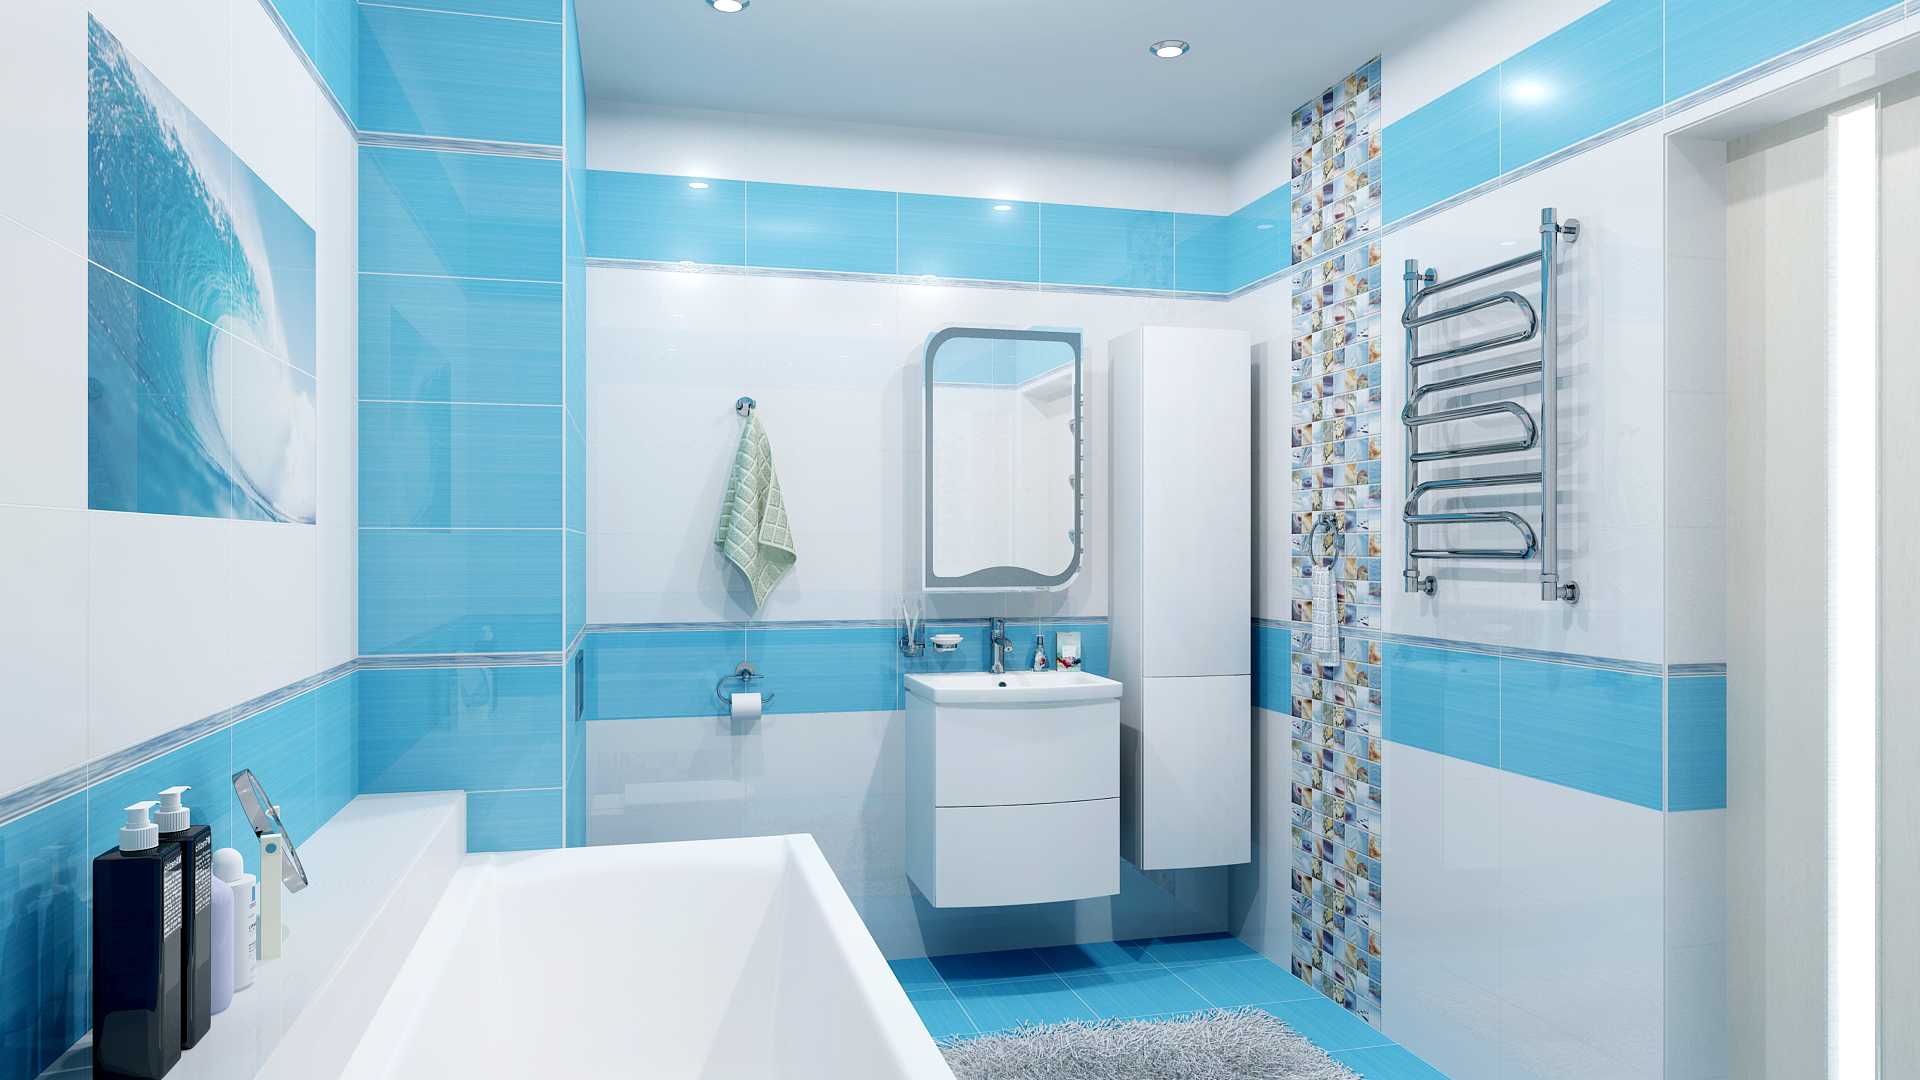 Размеры плитки для ванной – есть ли разница при выборе?